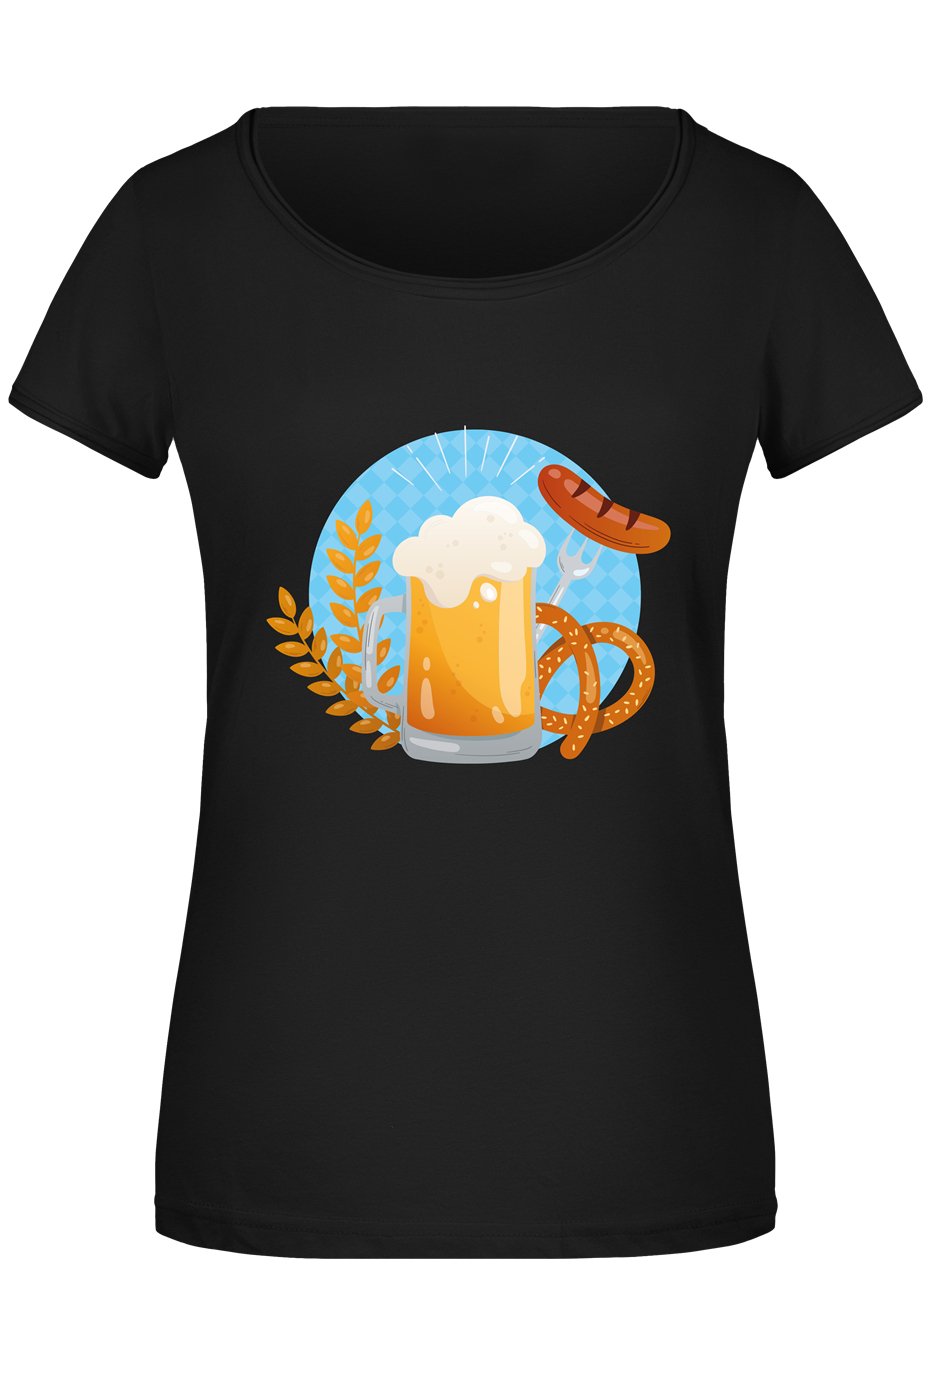 Bild: T-Shirt Damen - Bier Brezel Wurst Geschenkidee